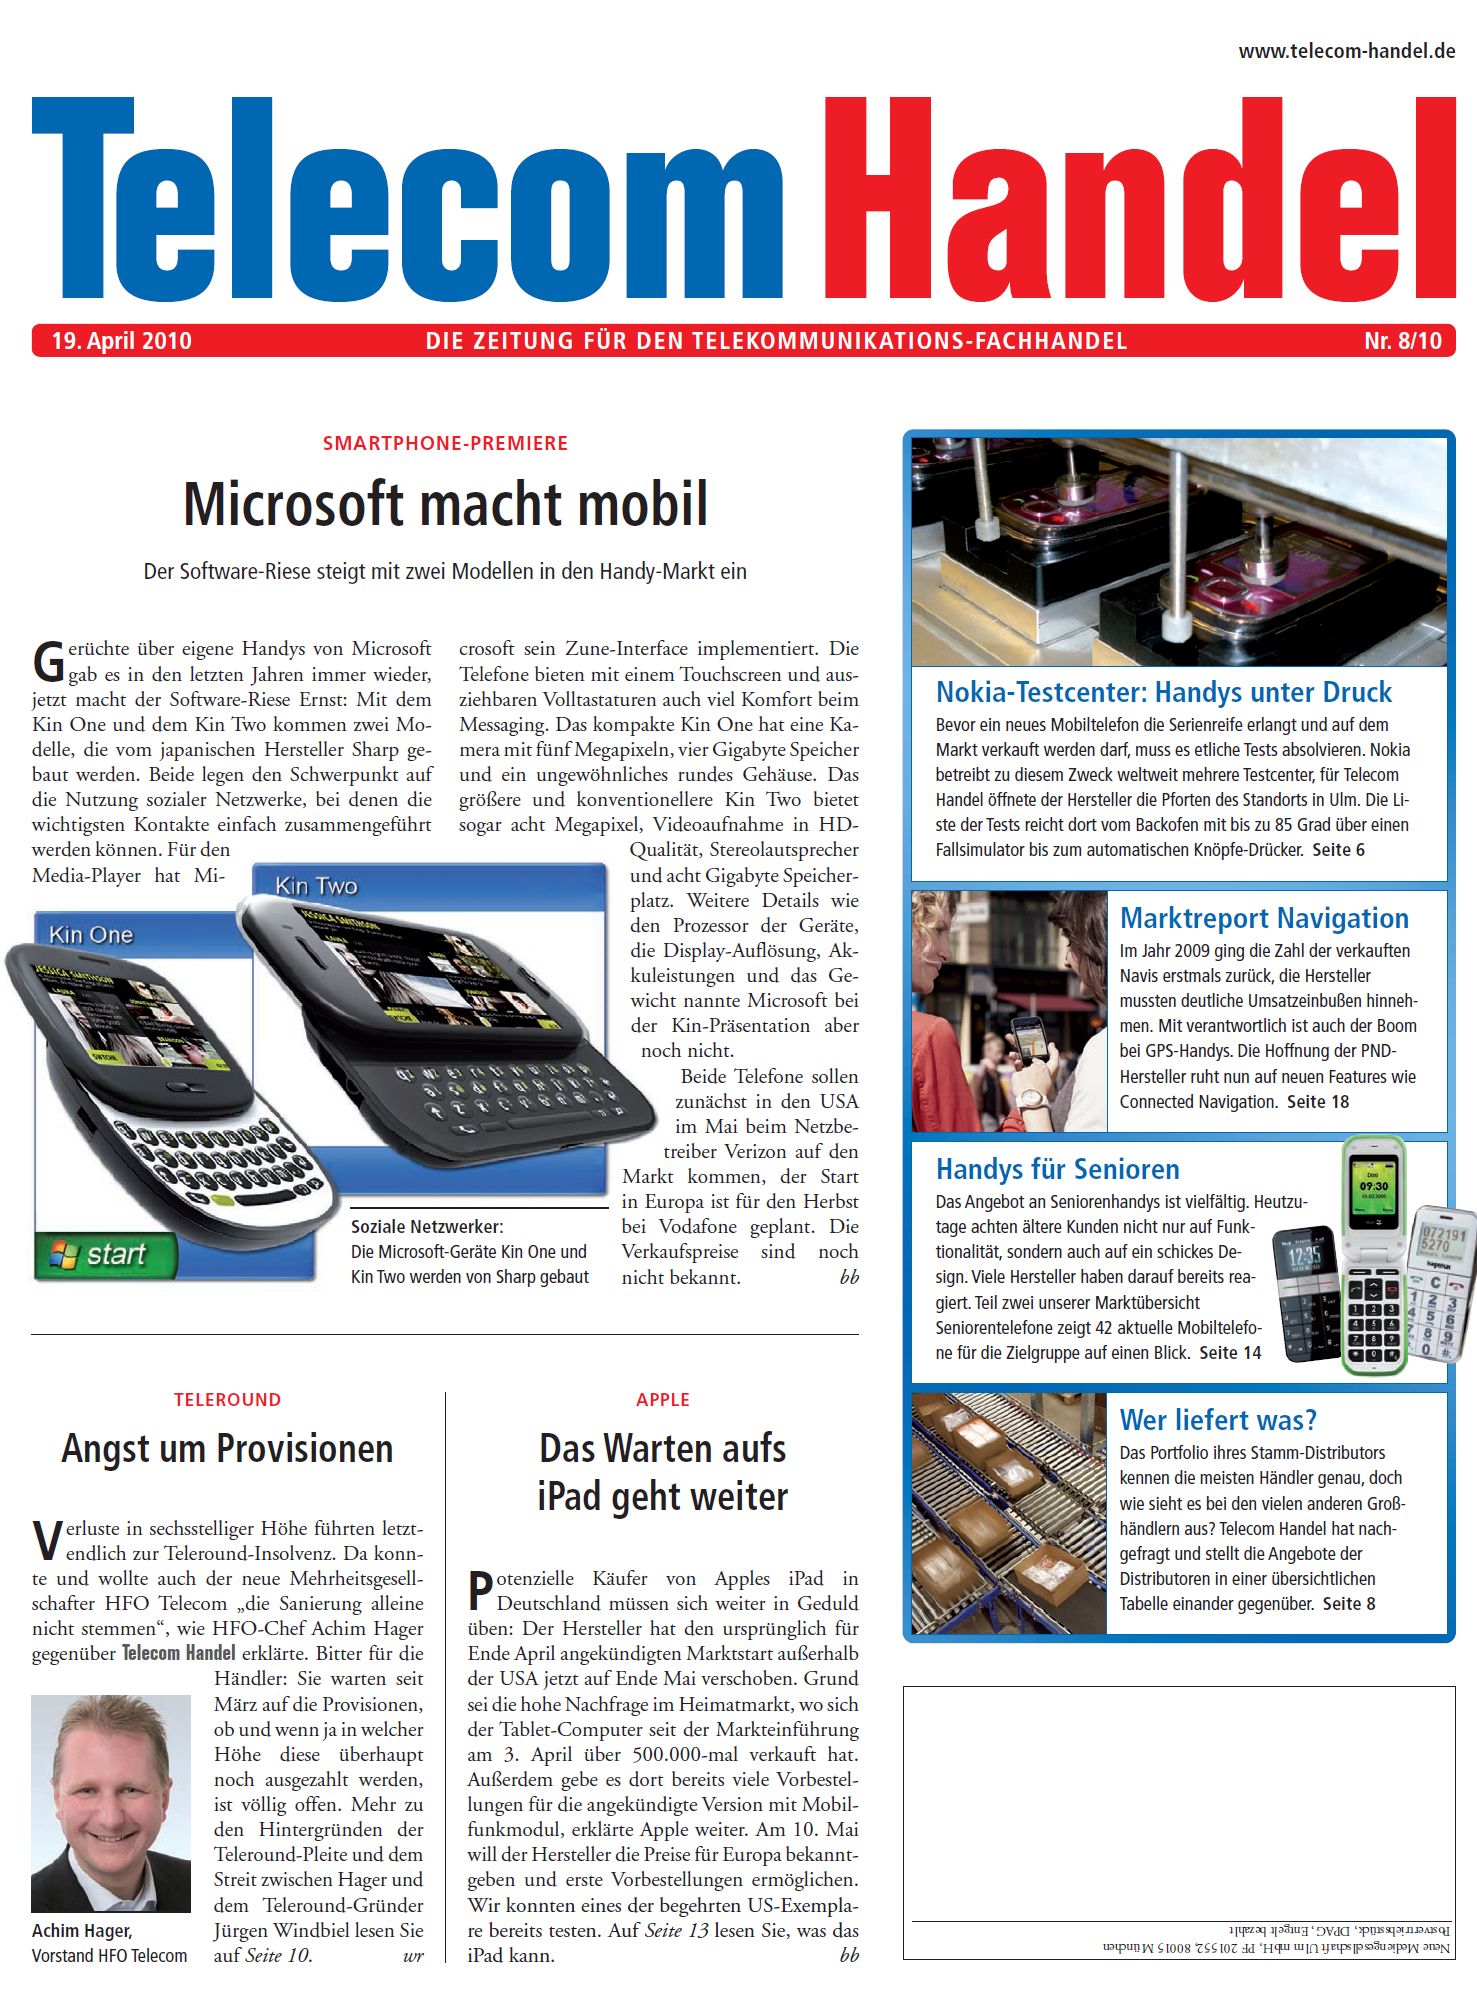 Telecom Handel Ausgabe 08/2010